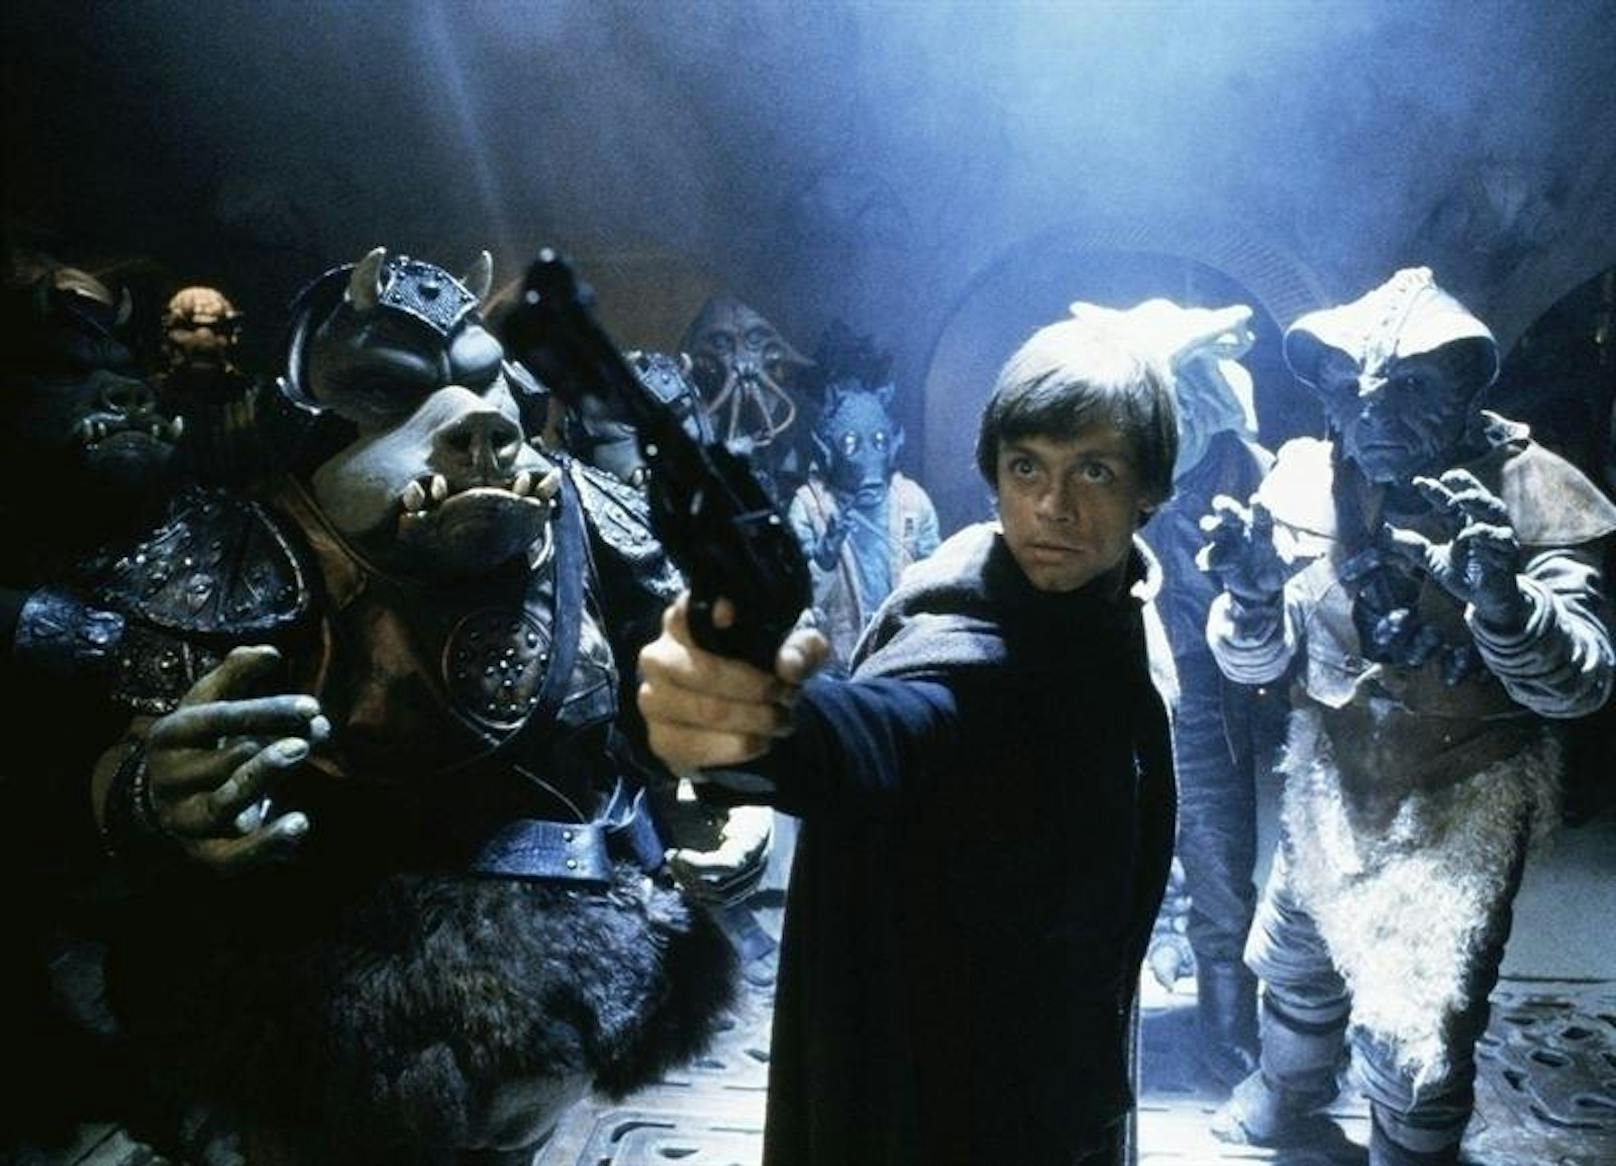 Mark Hamill in "Star Wars VI"